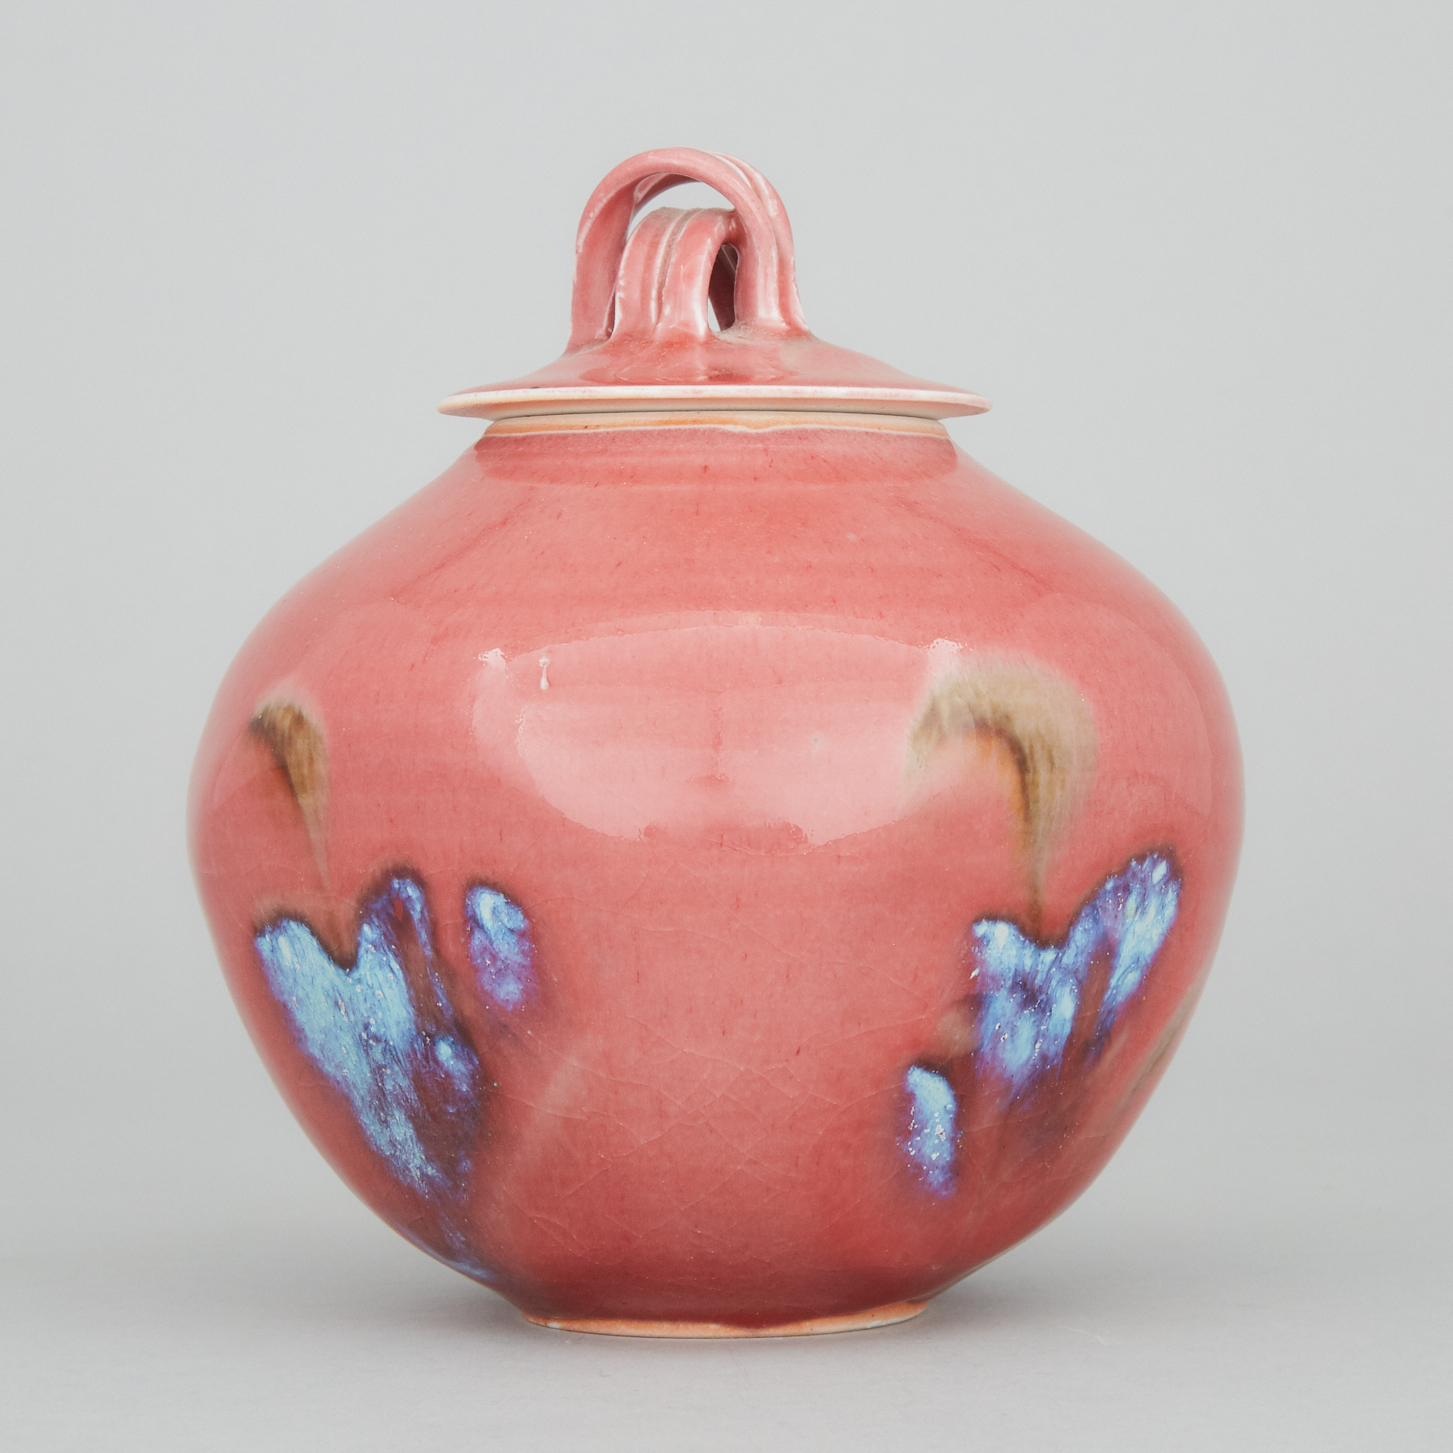 Kayo O'Young (Canadian, b.1950), Rose Glazed Jar, c.1993